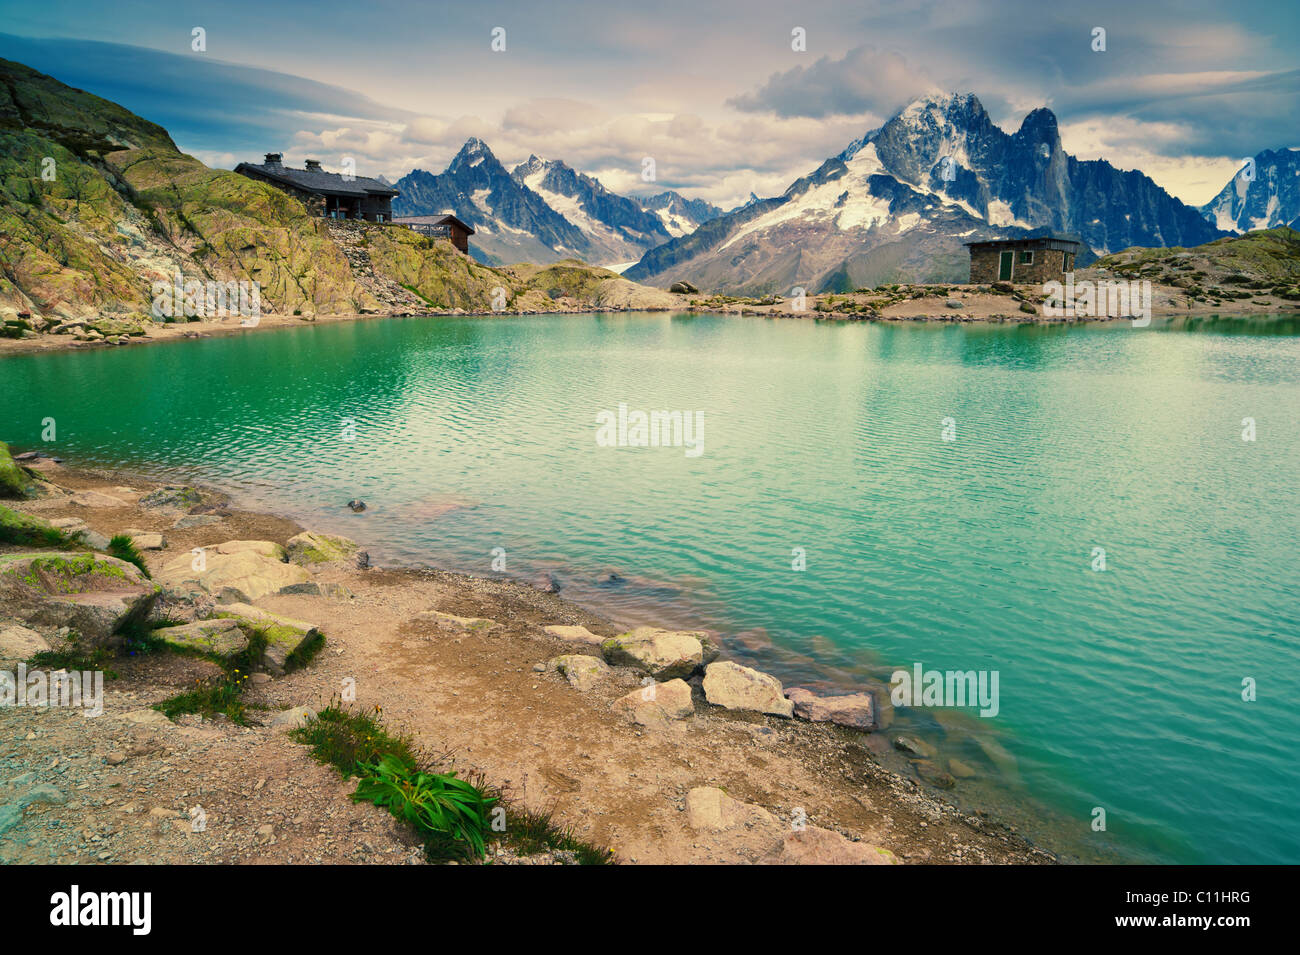 Lac de montagne. Lac Blanc, Chamonix, France. Destination touristique populaire dans les Alpes françaises. Banque D'Images